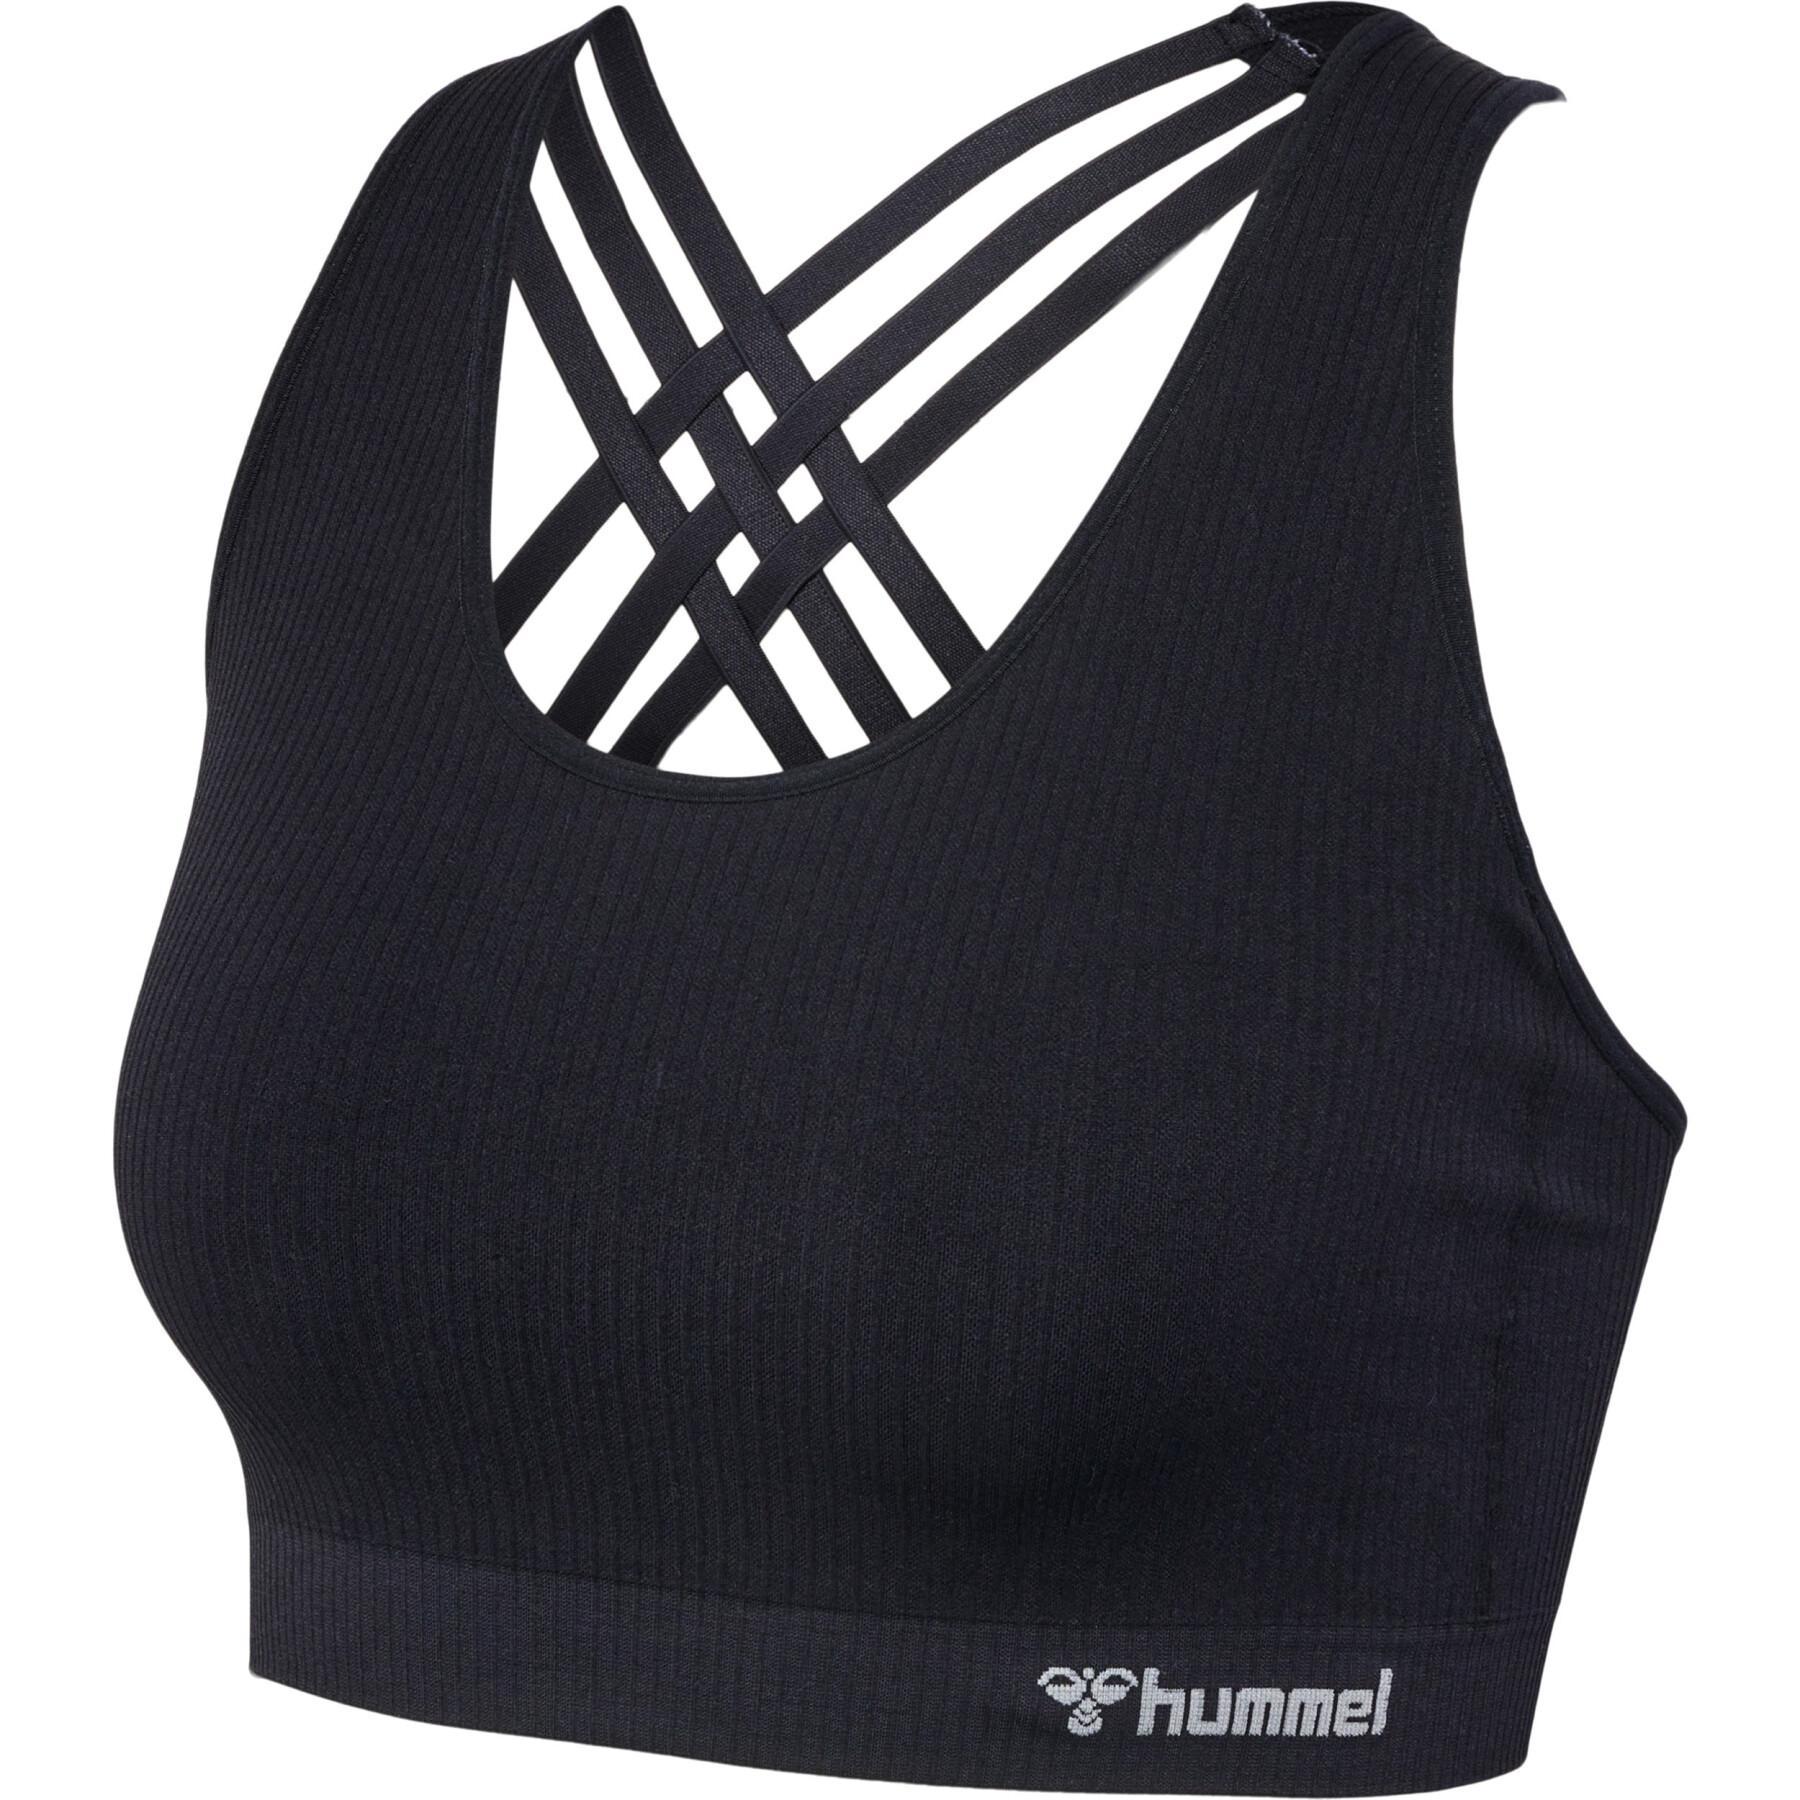 Seamless bra for women Hummel Mt Rest